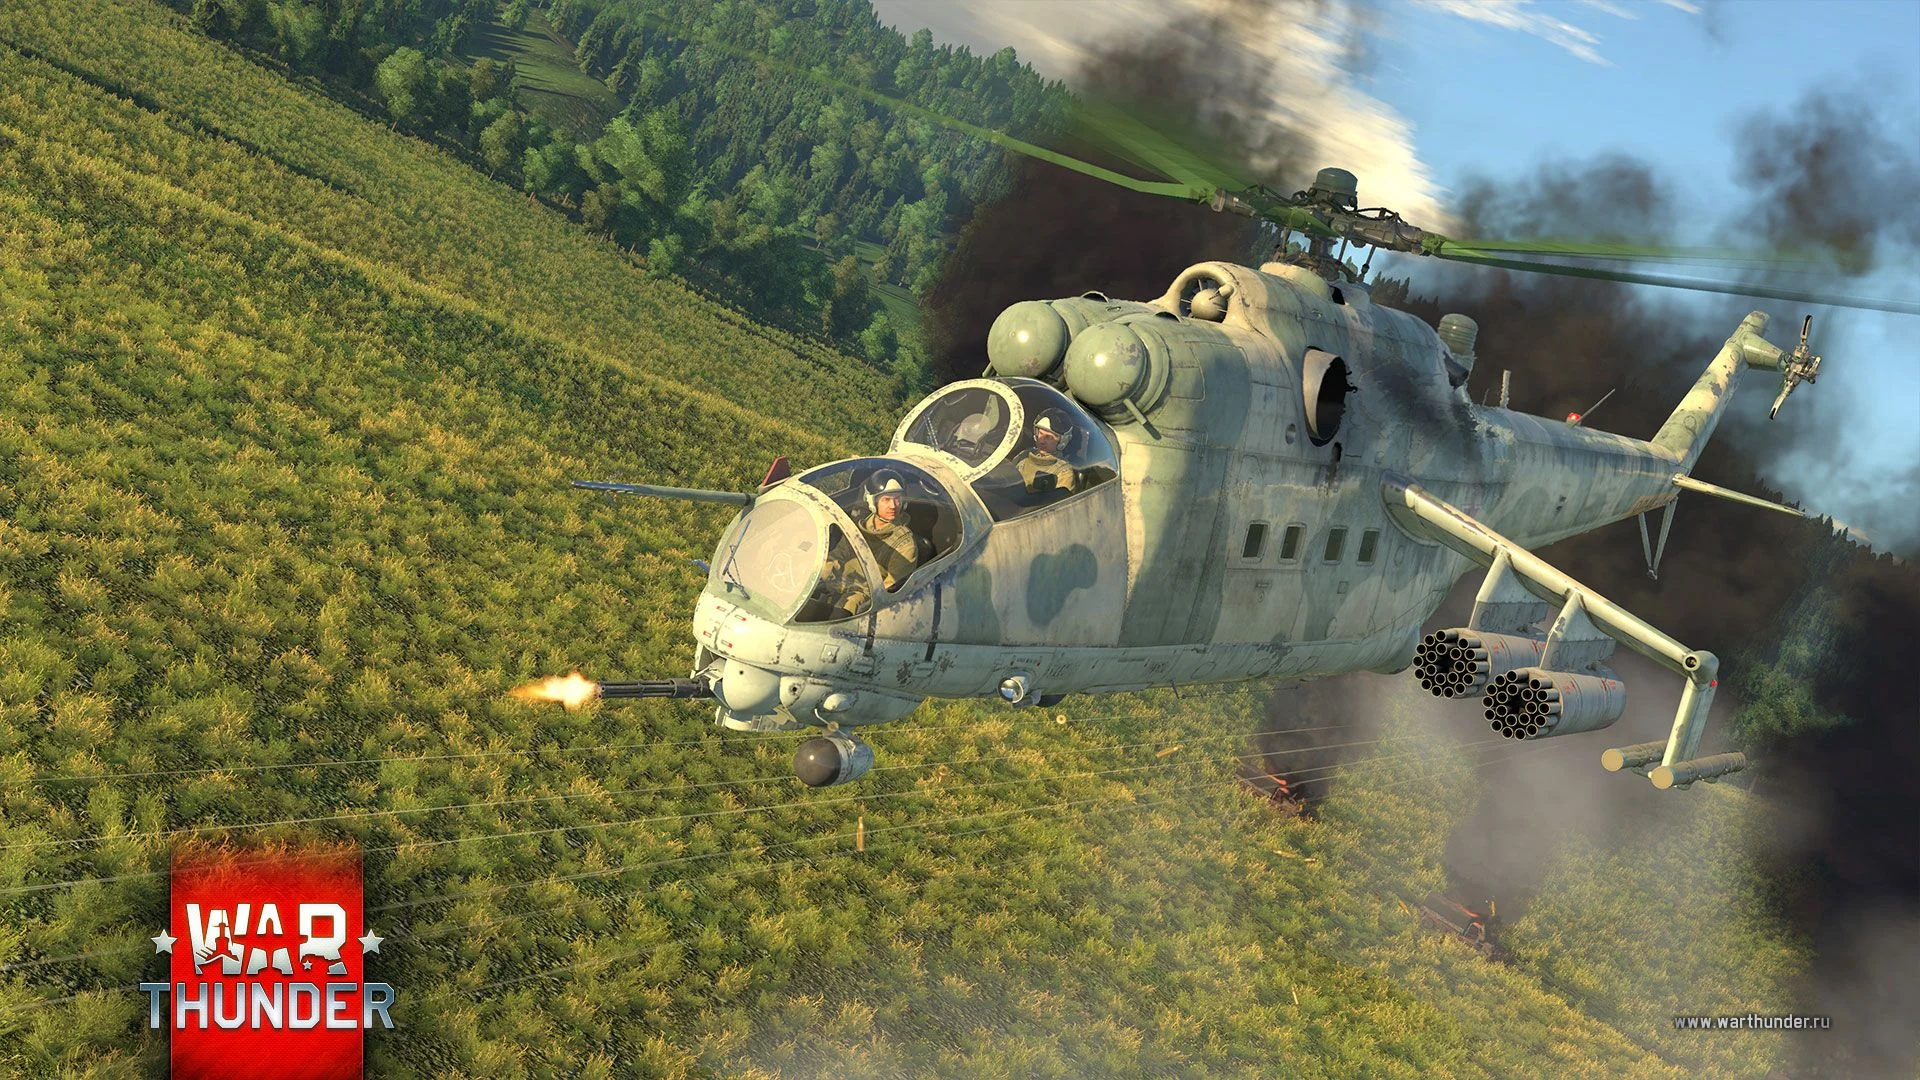 Вышло обновление «Полет Валькирий» для War Thunder. Теперь игрокам доступны боевые вертолеты - фото 1